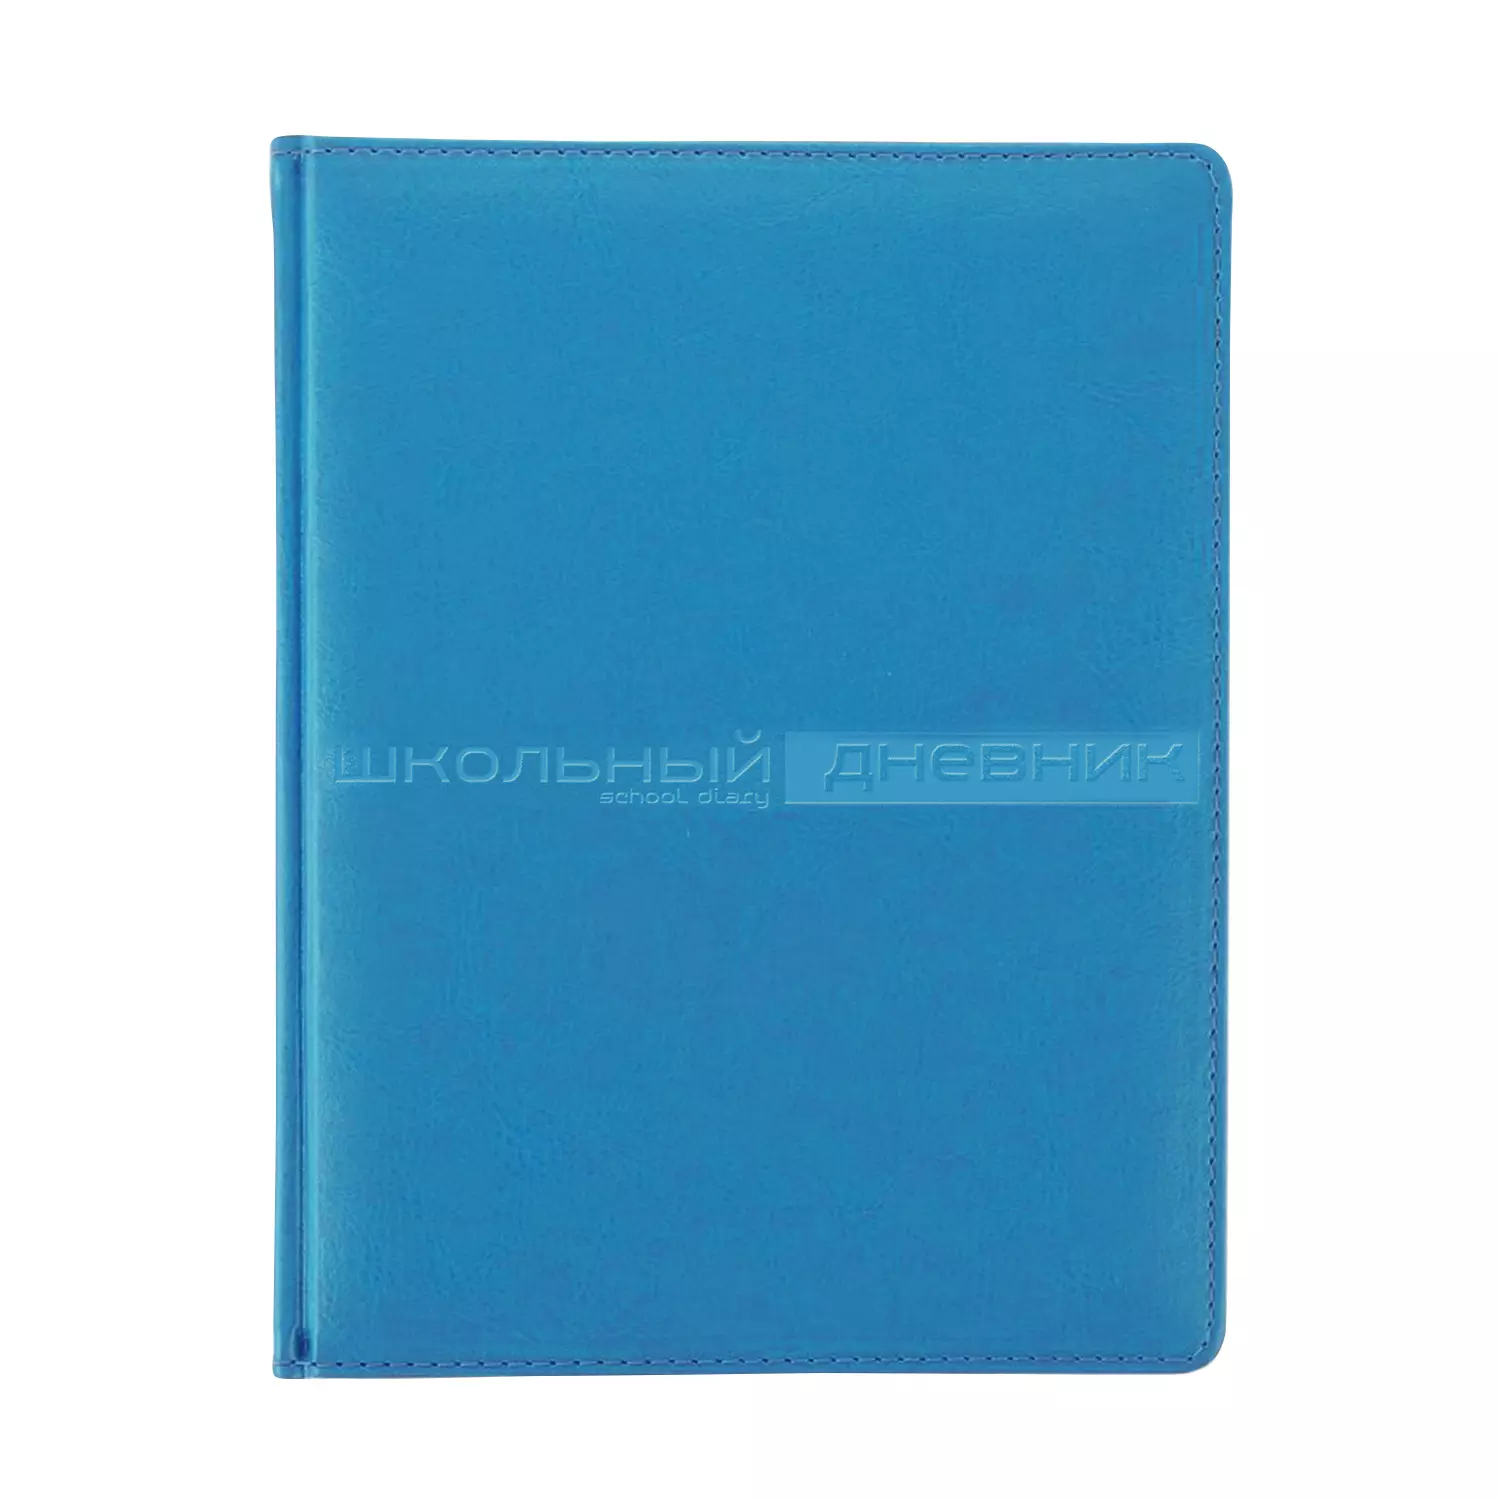 Дневник школьный А5 (170 х 220 мм) SIDNEY NEBRASKA синий 48 л.